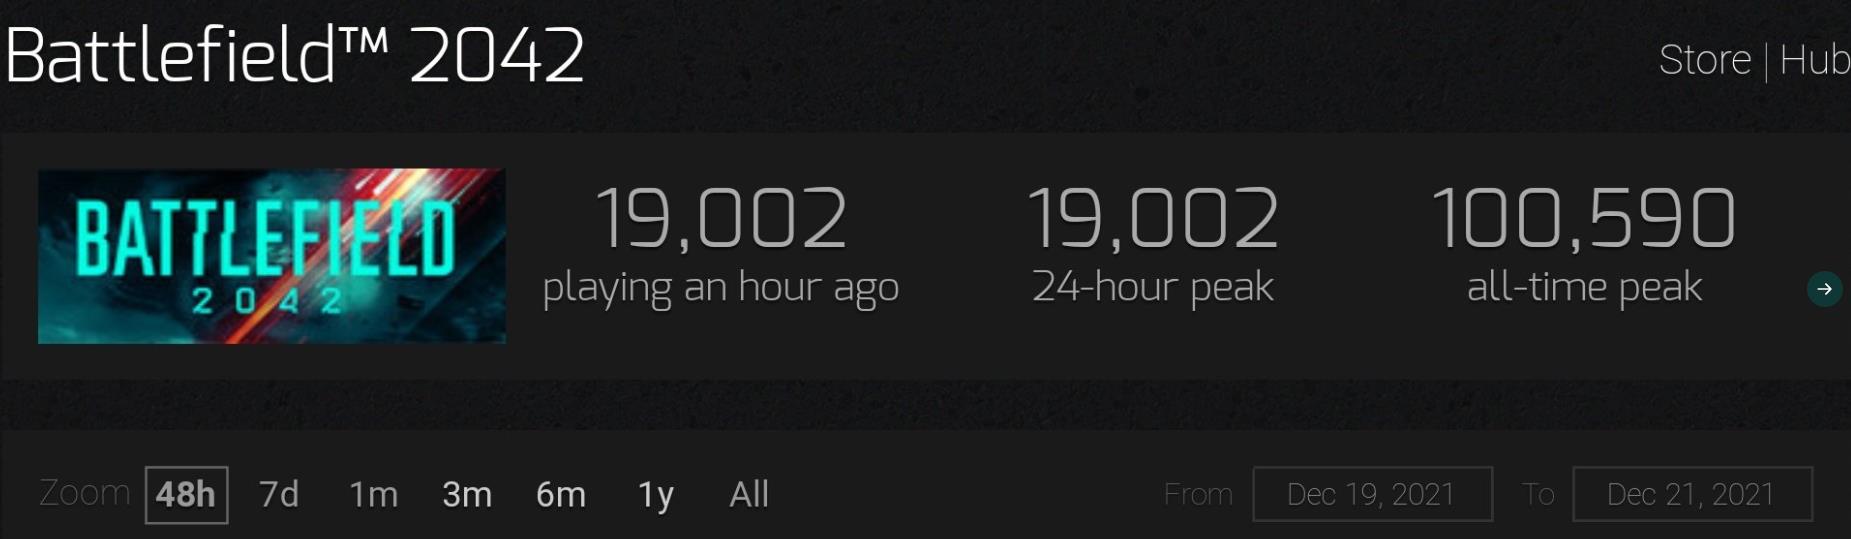 二战老兵回归《战地5》Steam在线人数超过《战地2042》